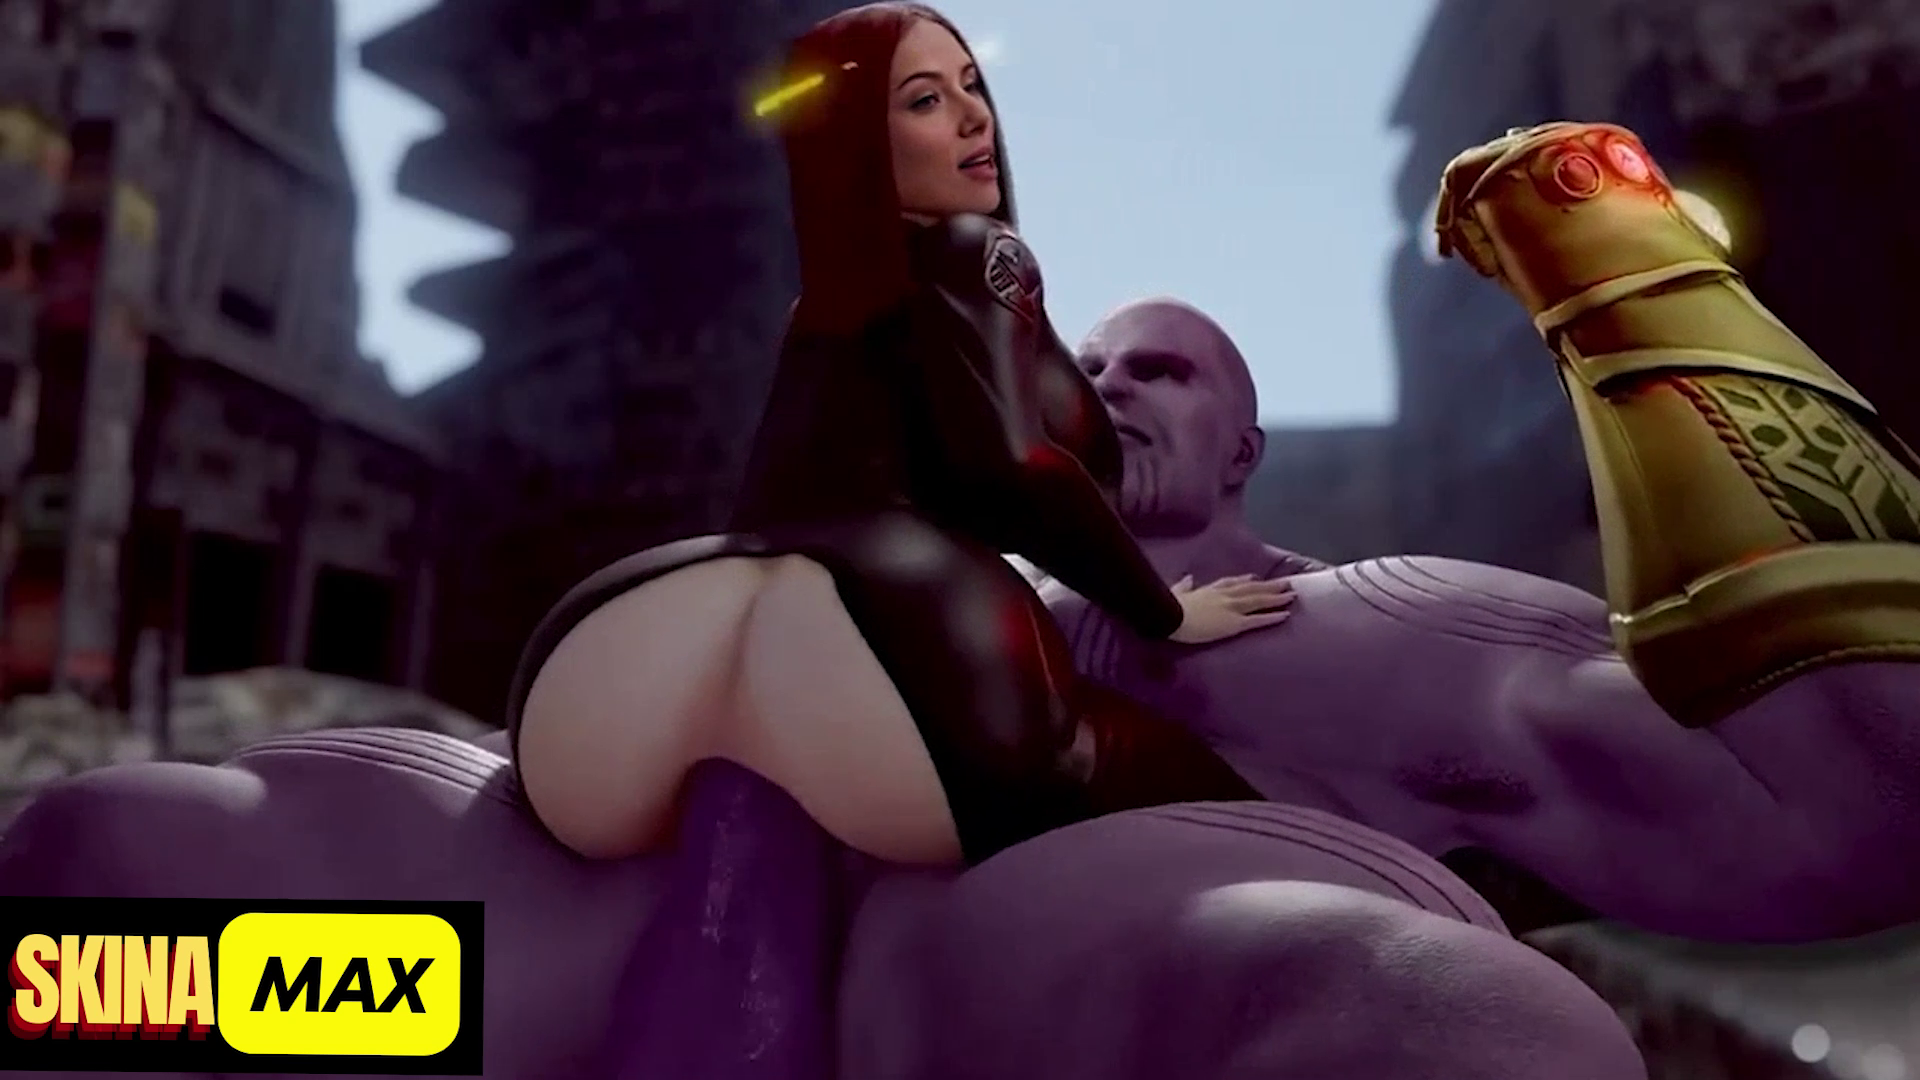 Broken Porn - Black widow is Broken by Thanos. Cloned Voice! DeepFake Porn - MrDeepFakes